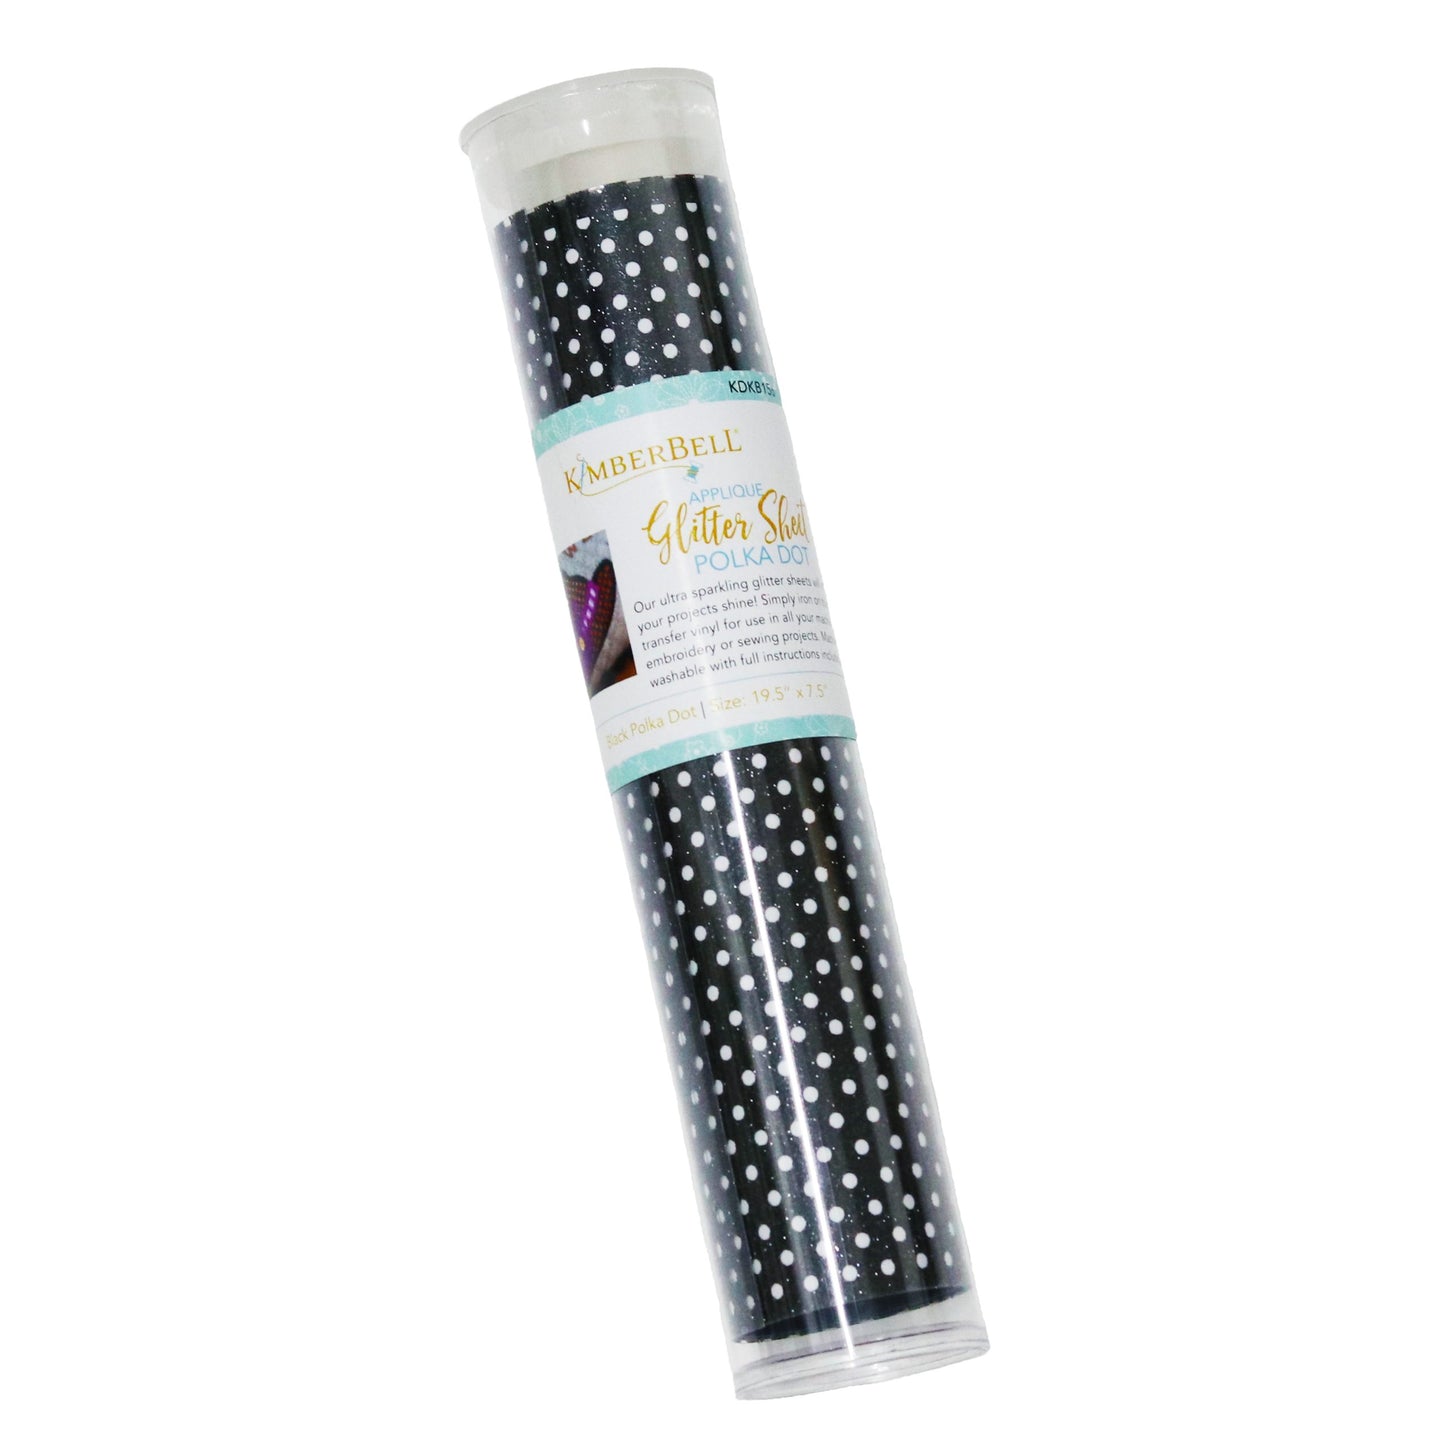 Kimberbell Applique Glitter Sheet Black Polka Dot